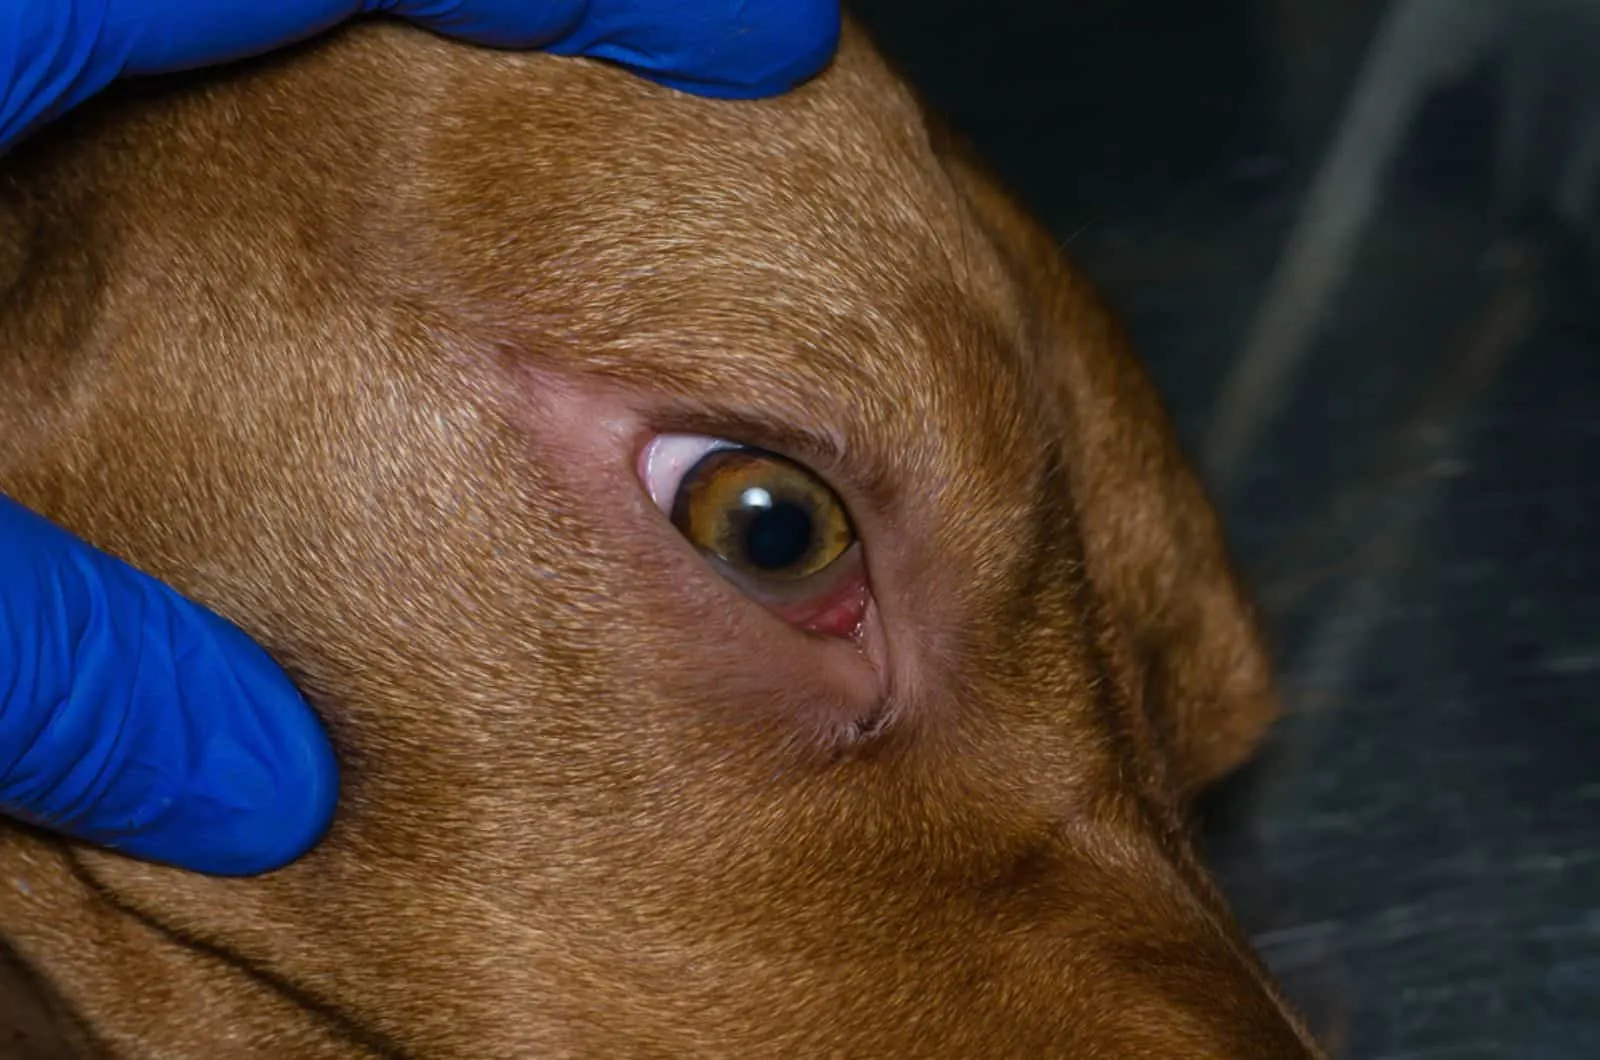 hungarian viszla dog at eye examination 